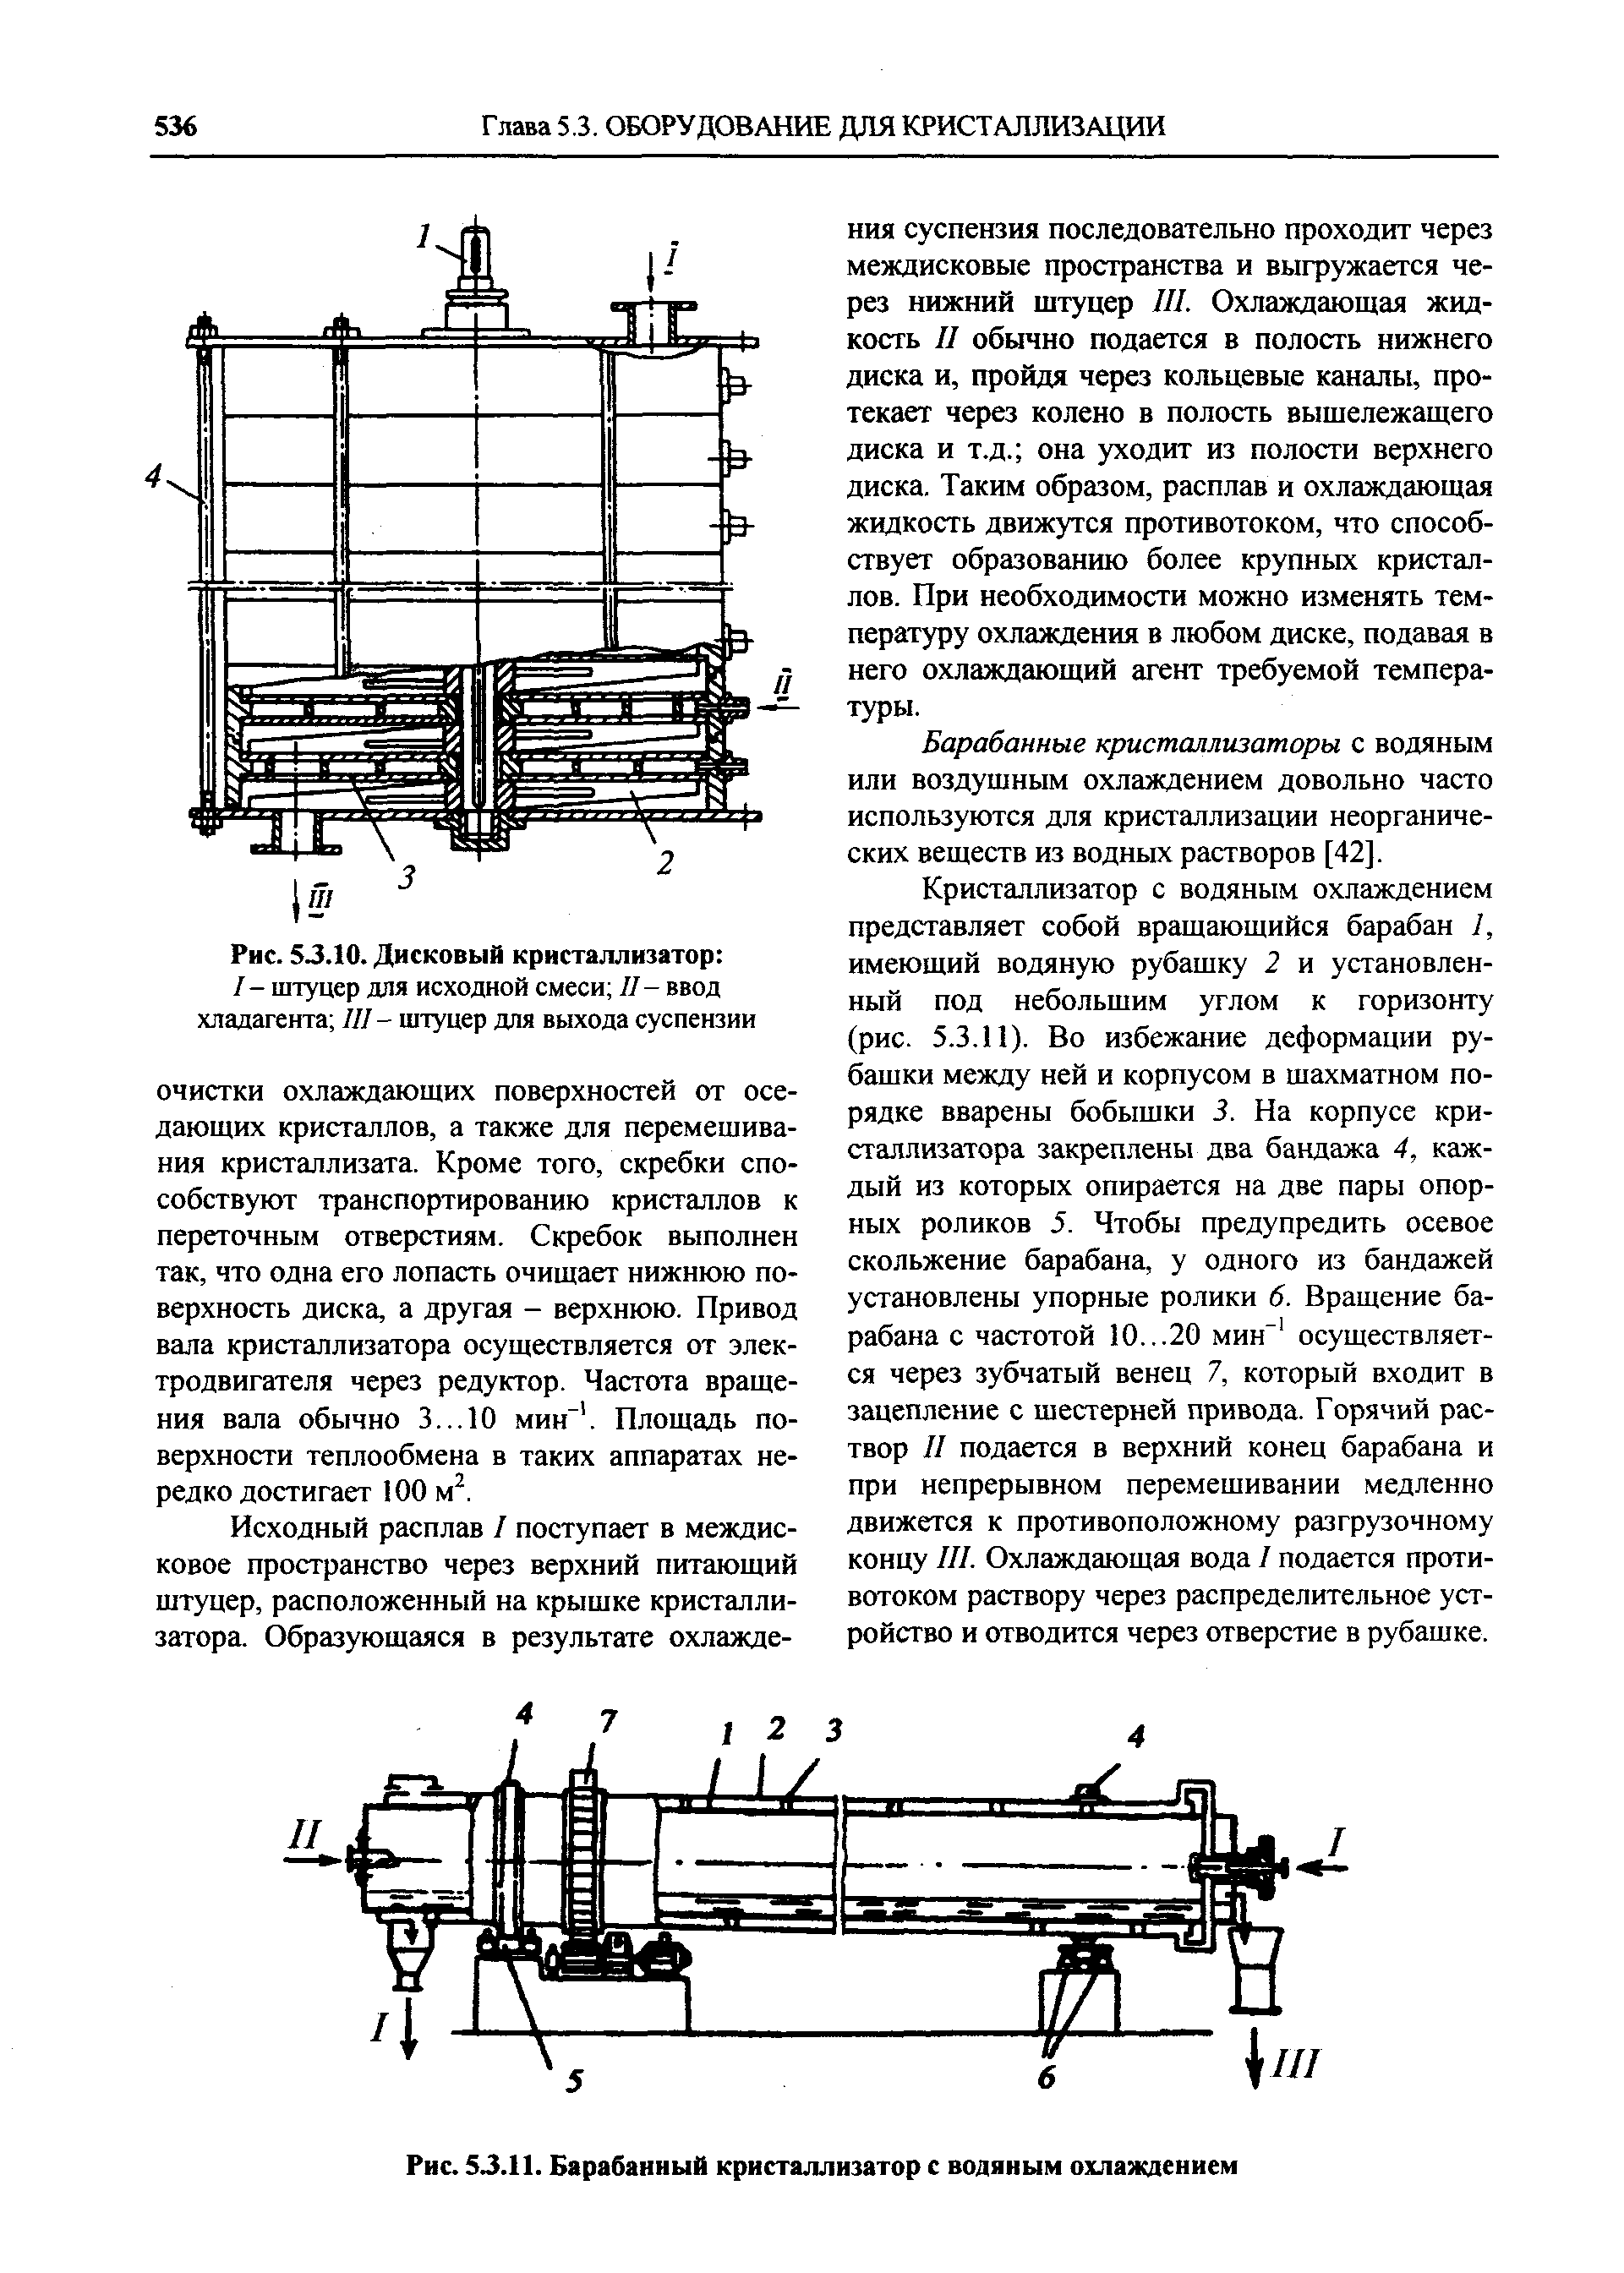 Рис. 5J.11. Барабанный кристаллизатор с водяным охлаждением
